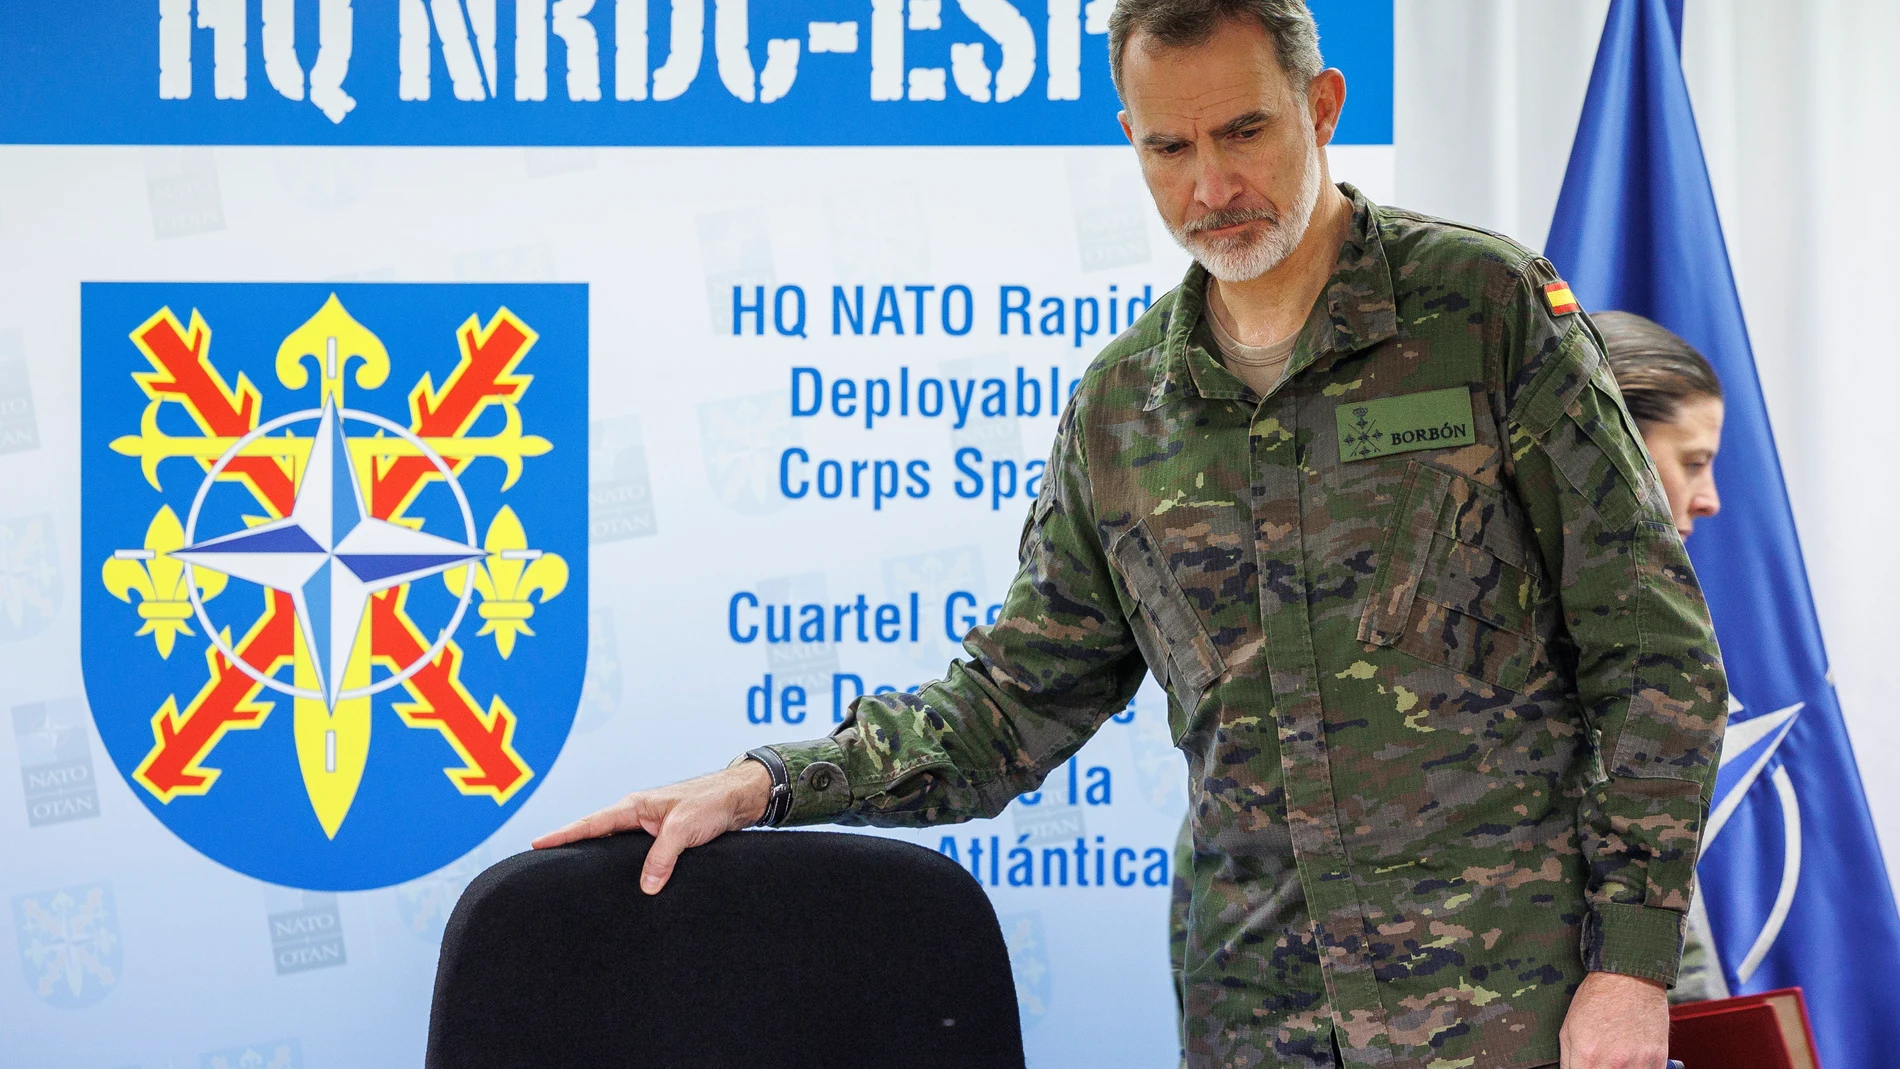 El Rey visitó el miércoles uno de los cuarteles de la OTAN en España